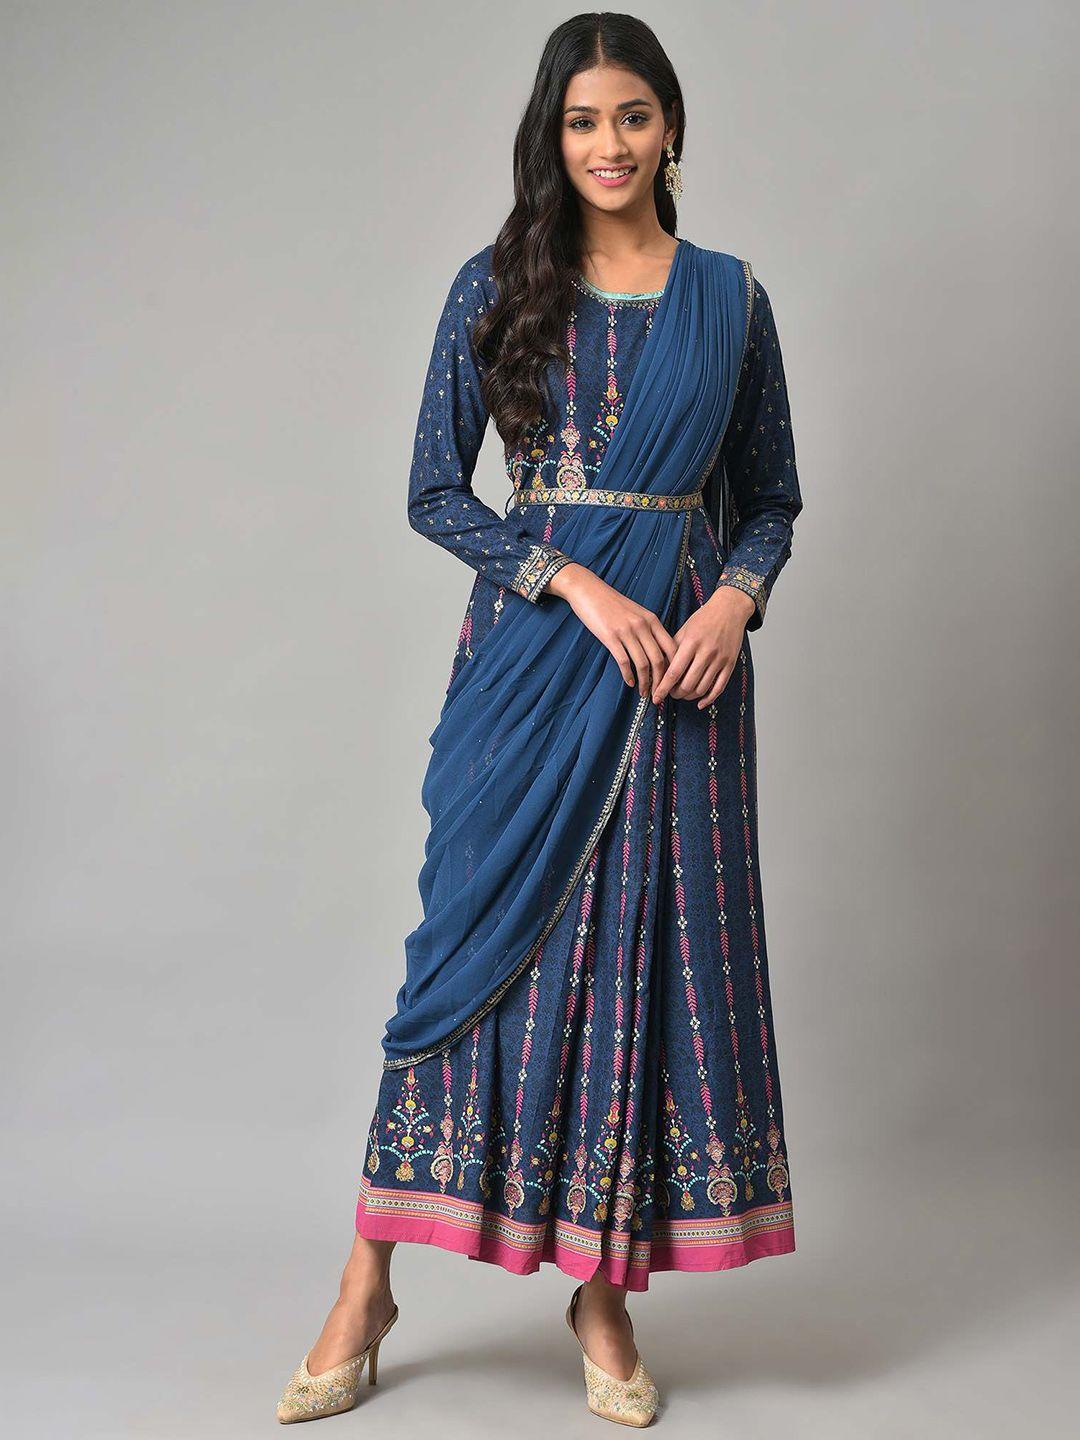 w-blue-ethnic-motifs-ethnic-maxi-dress